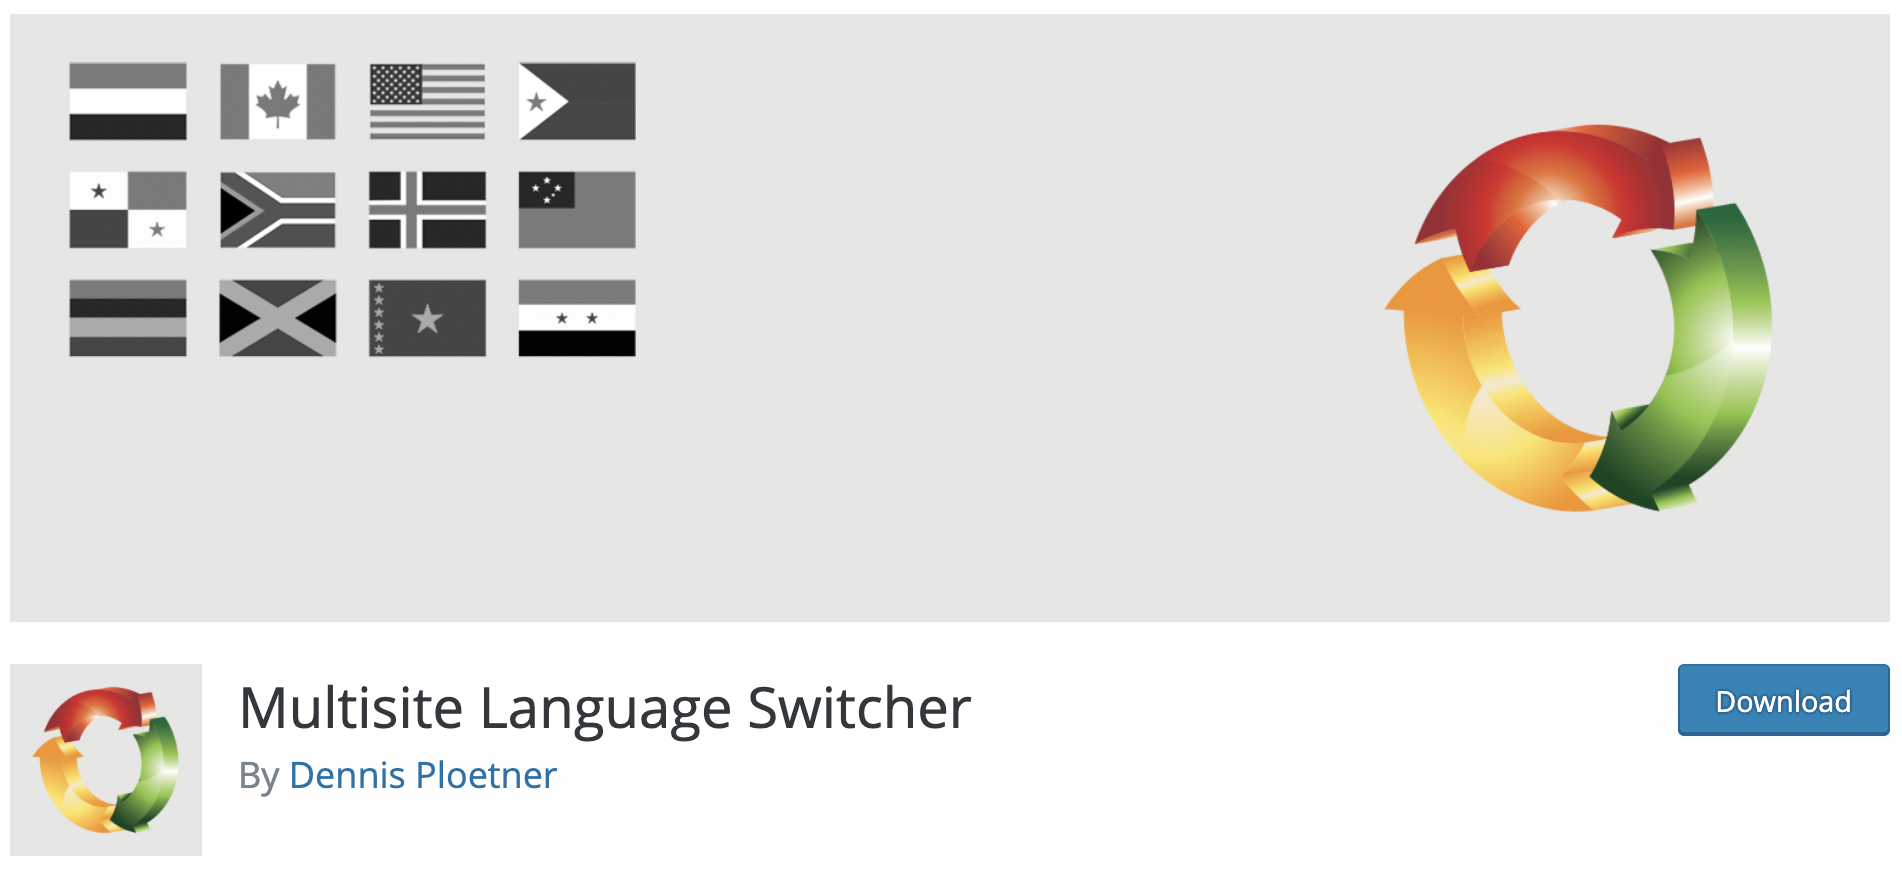 multisite language switcher